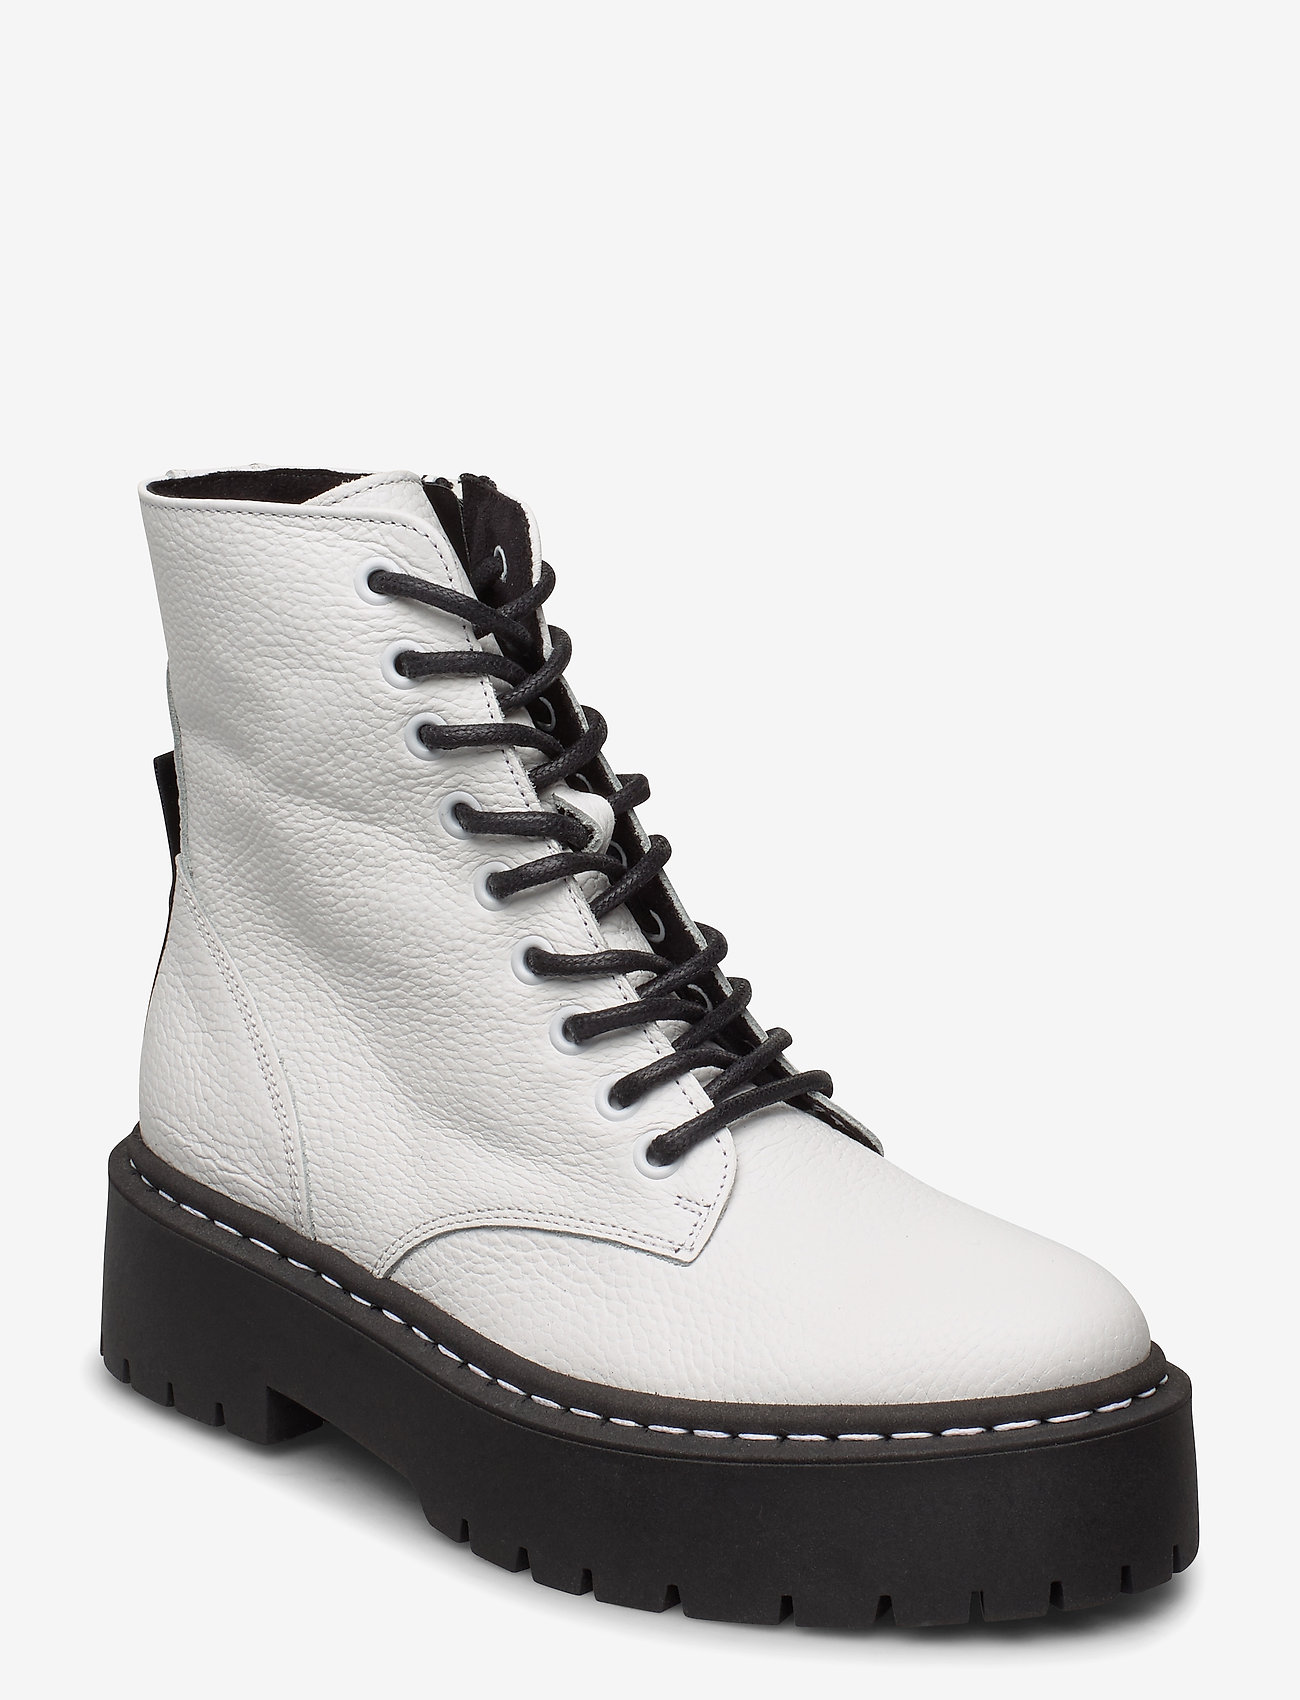 steve madden boots white